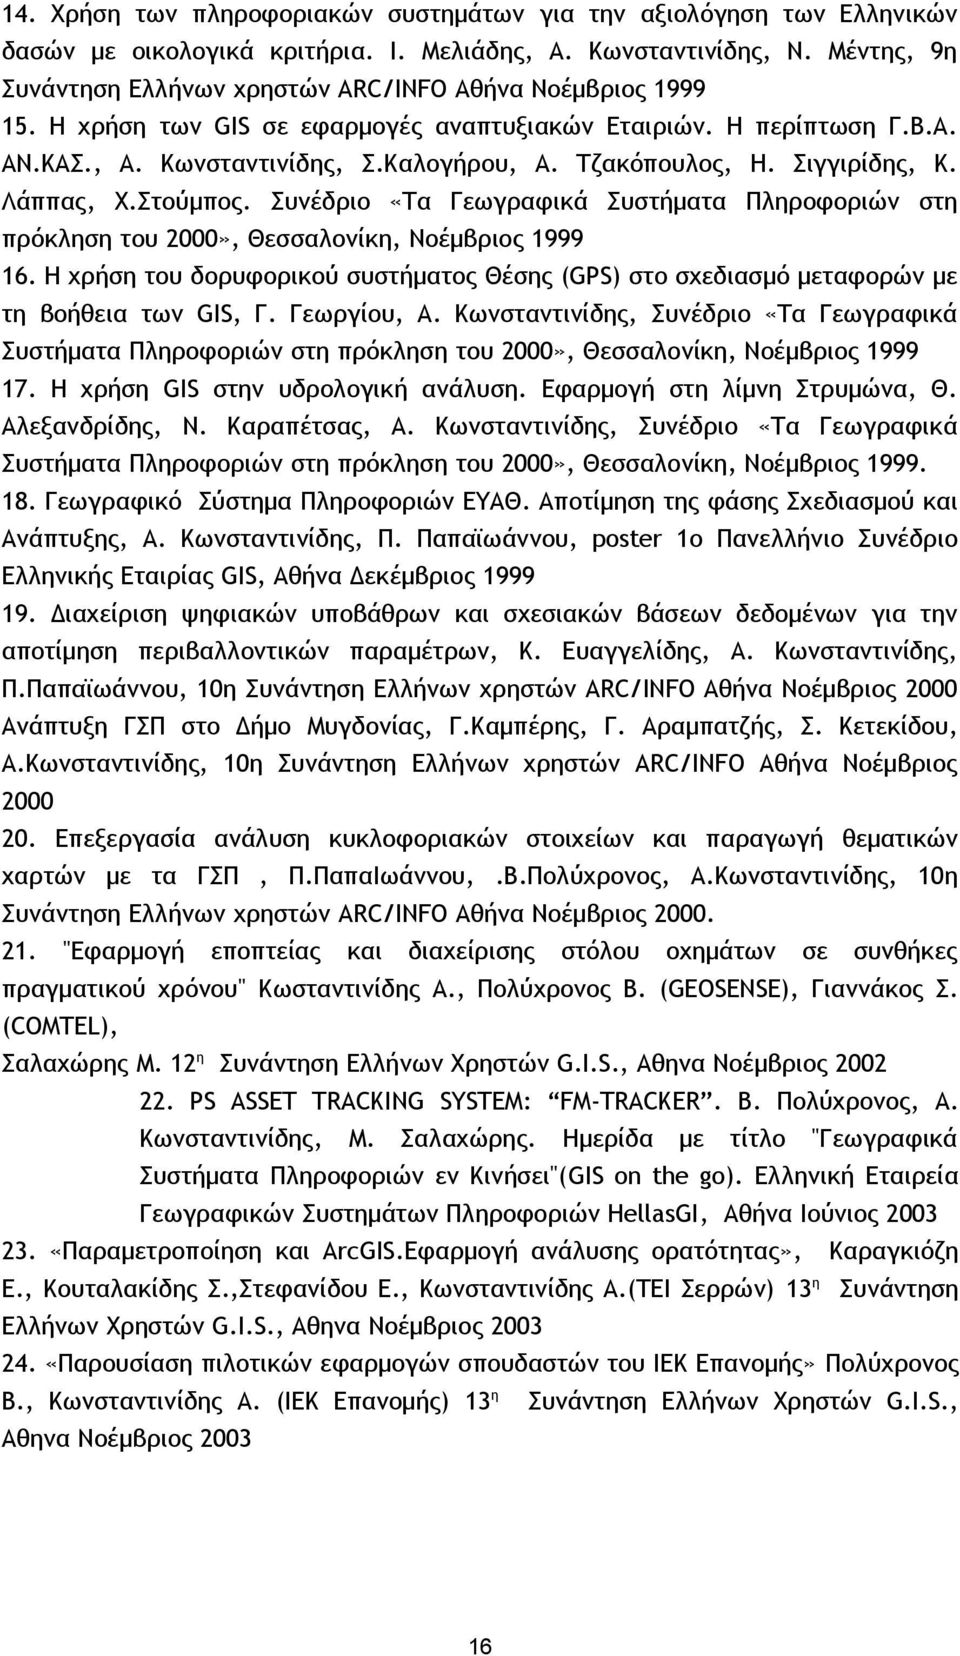 Τζακόπουλος, Η. Σιγγιρίδης, Κ. Λάππας, Χ.Στούμπος. Συνέδριο «Τα Γεωγραφικά Συστήματα Πληροφοριών στη πρόκληση του 2000», Θεσσαλονίκη, Νοέμβριος 1999 16.